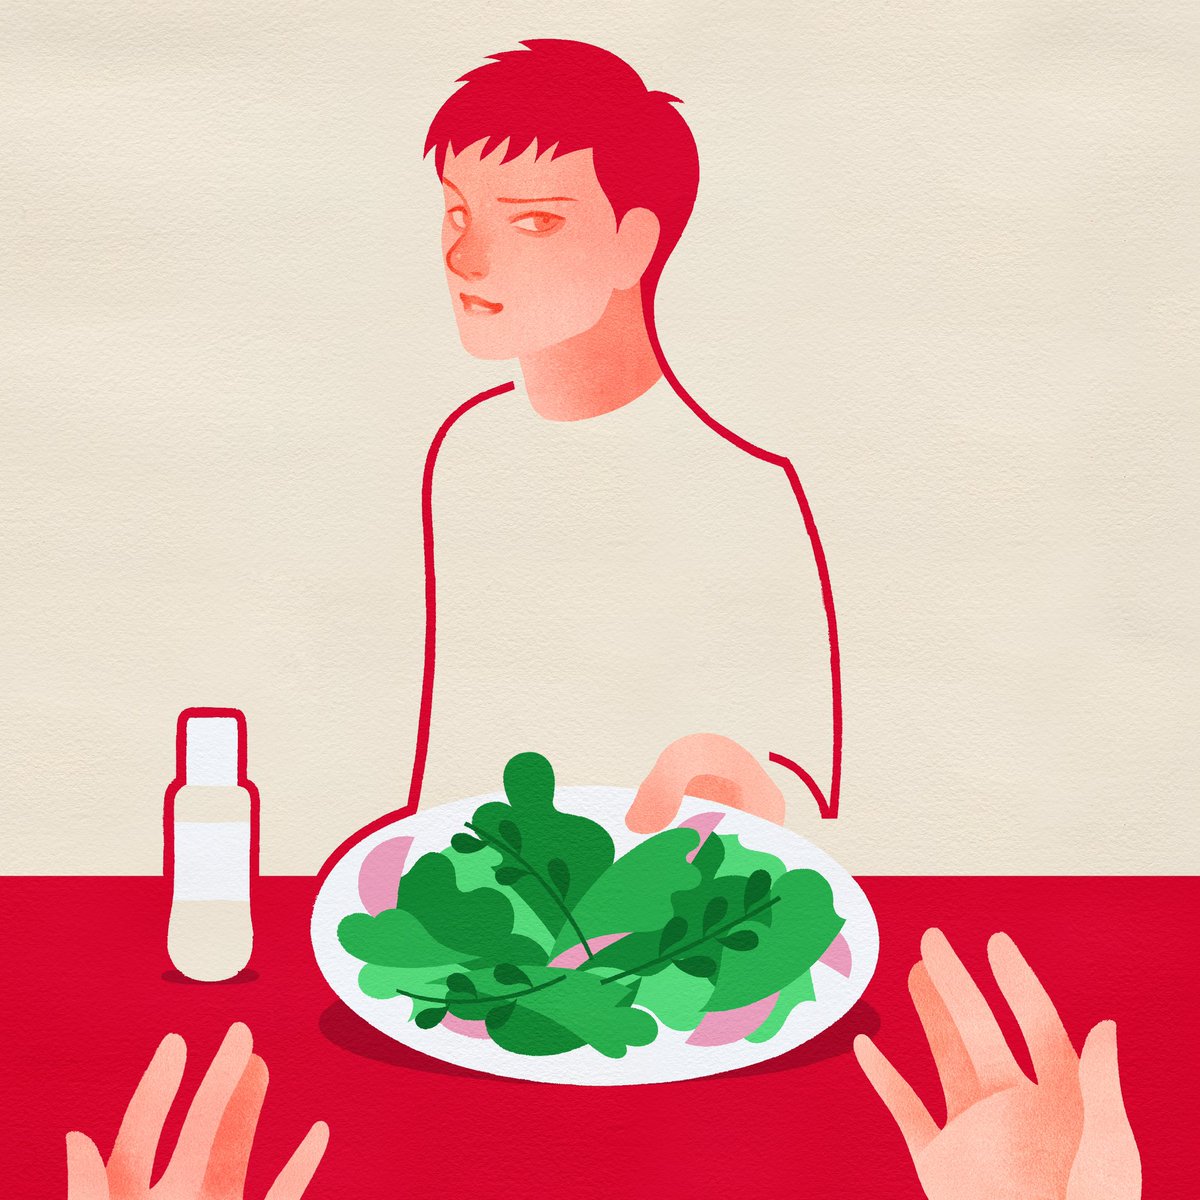 「お知らせキユーピーさんの「#食卓にサラダがあると 投稿キャンペーン〜心に残る私の」|赤 akaのイラスト